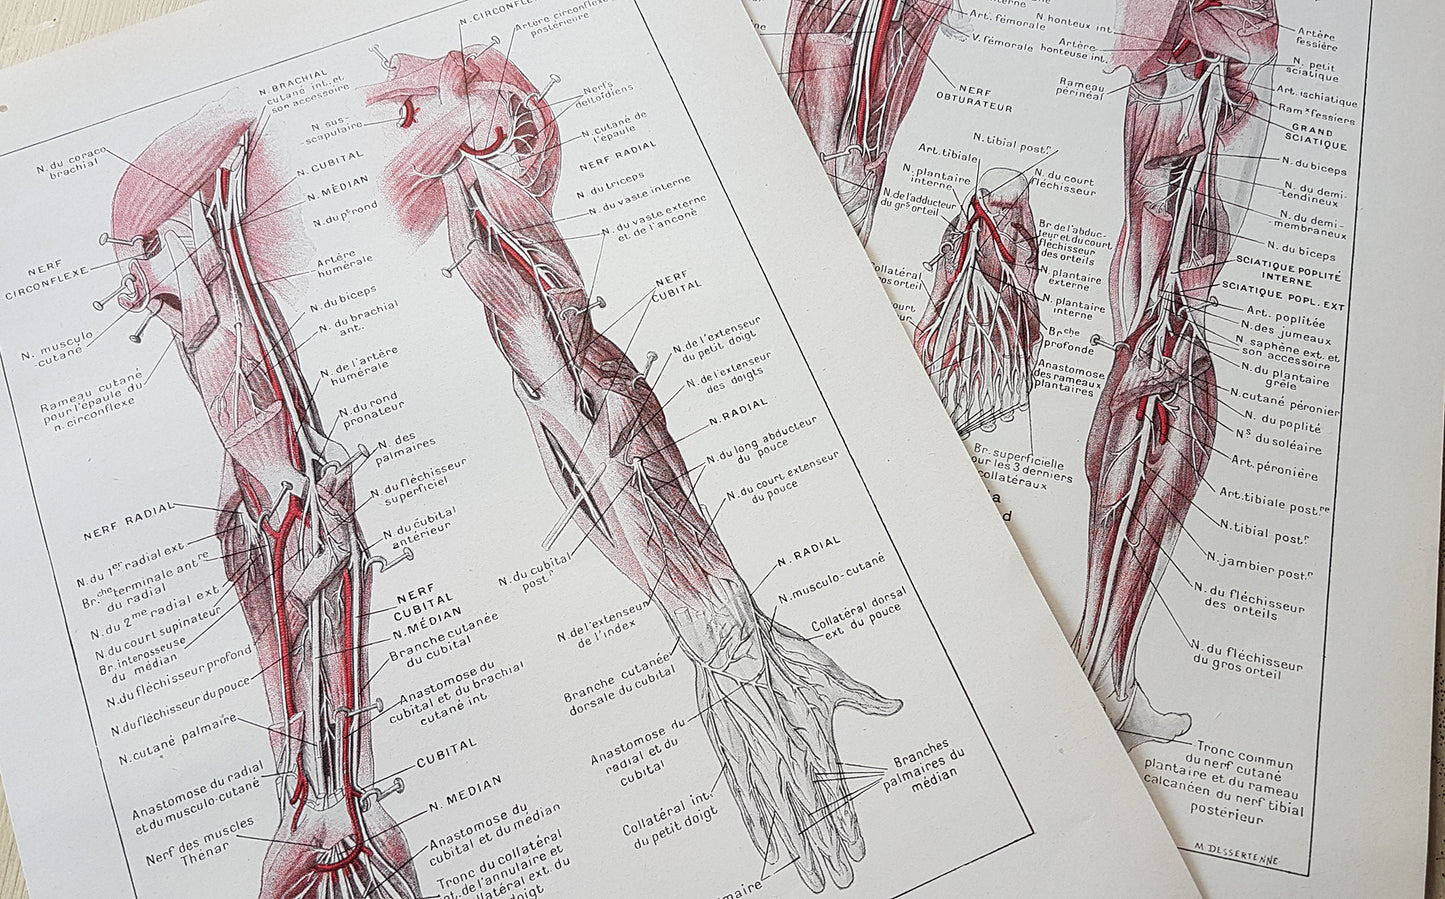 1962 2 illustrations médicales de nerfs